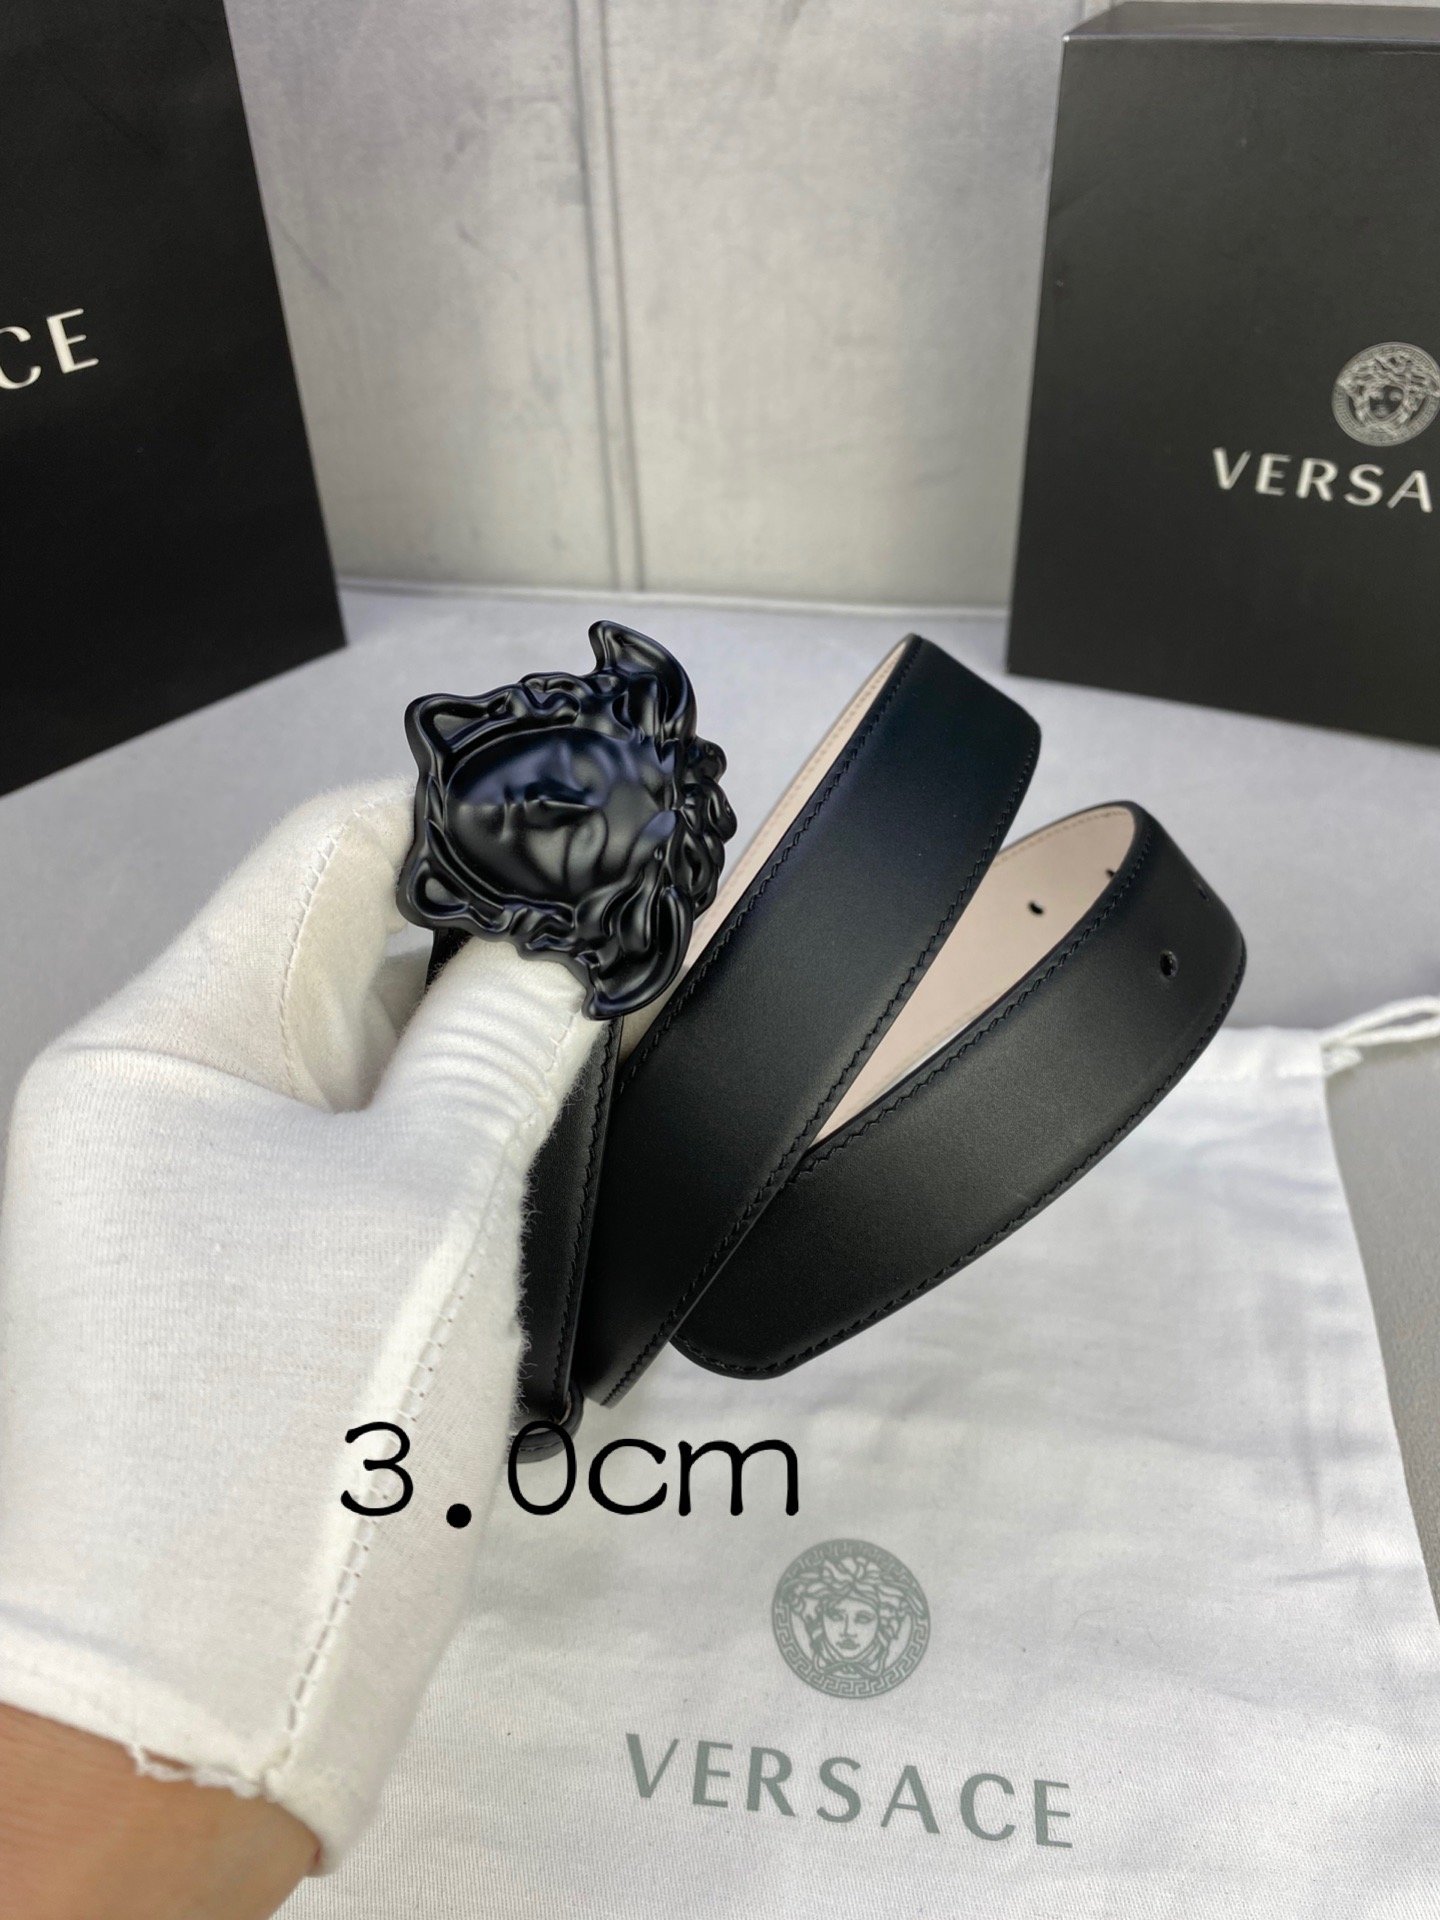 宽度3.0cm范思哲此腰带饰有标志性的Versace美杜莎头像扣彰显品牌格调是一款精美的衣橱必备单品秀场